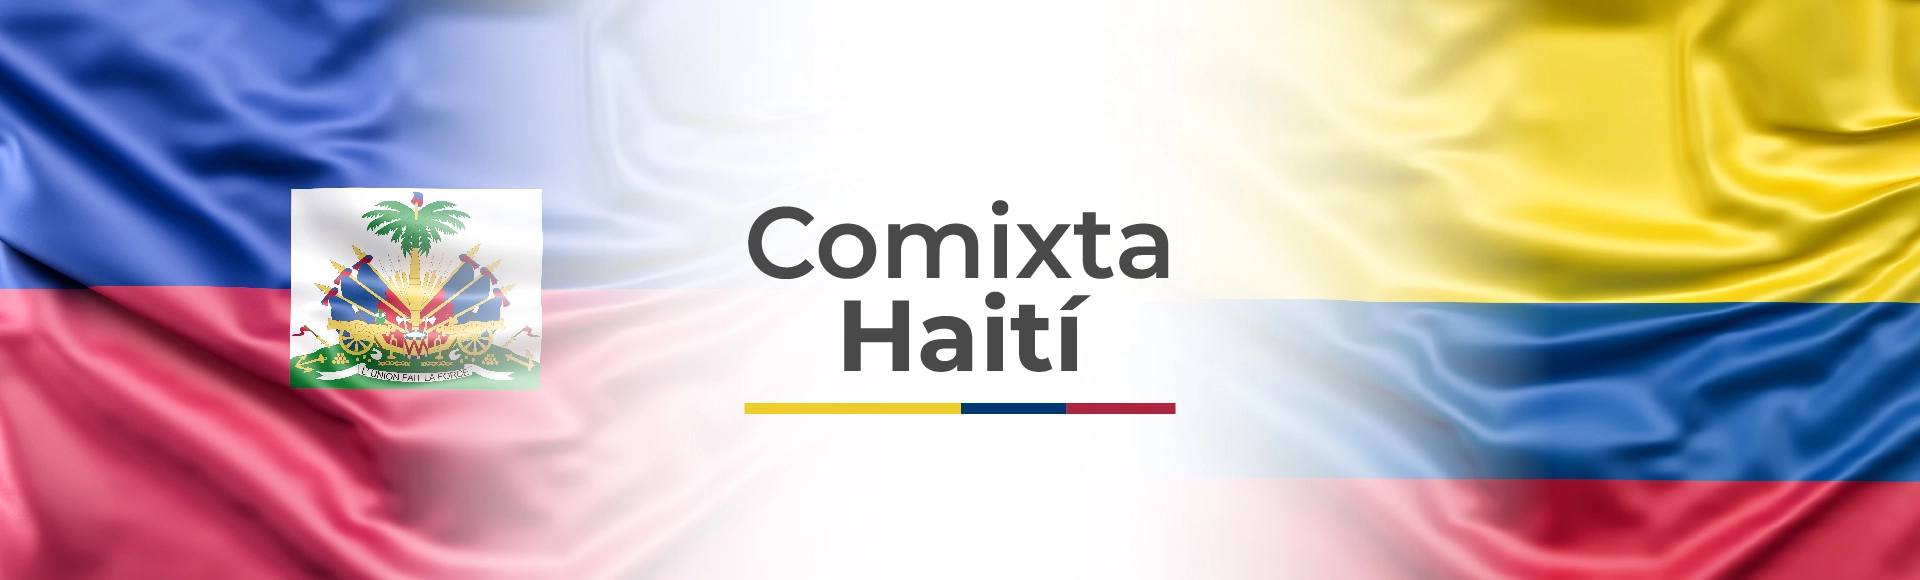 Imagen de la Comixta, a la izquierda la bandera de Haiti, a la derecha la bandera de Colombia en el medio en blanco dice Comixta con Haití